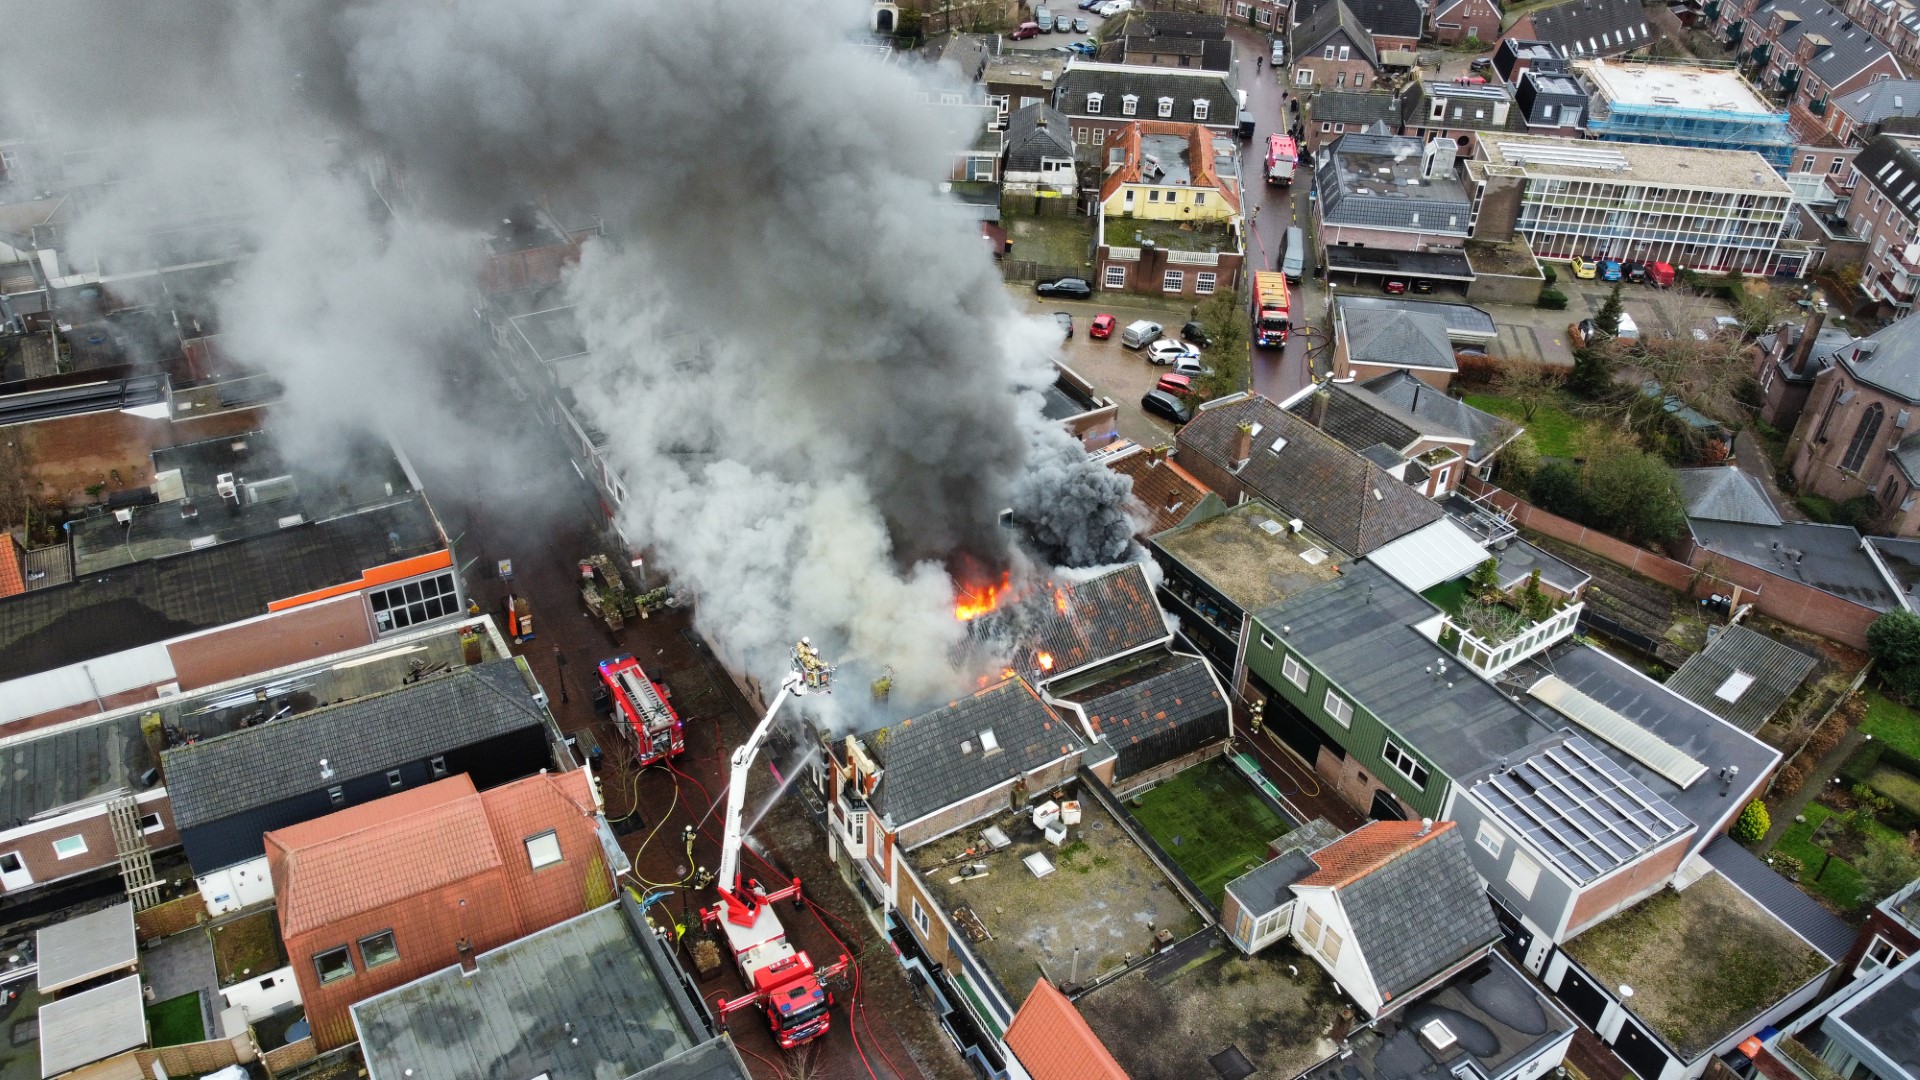 FOTOSERIE UPDATE: Grote brand in centrum Coevorden